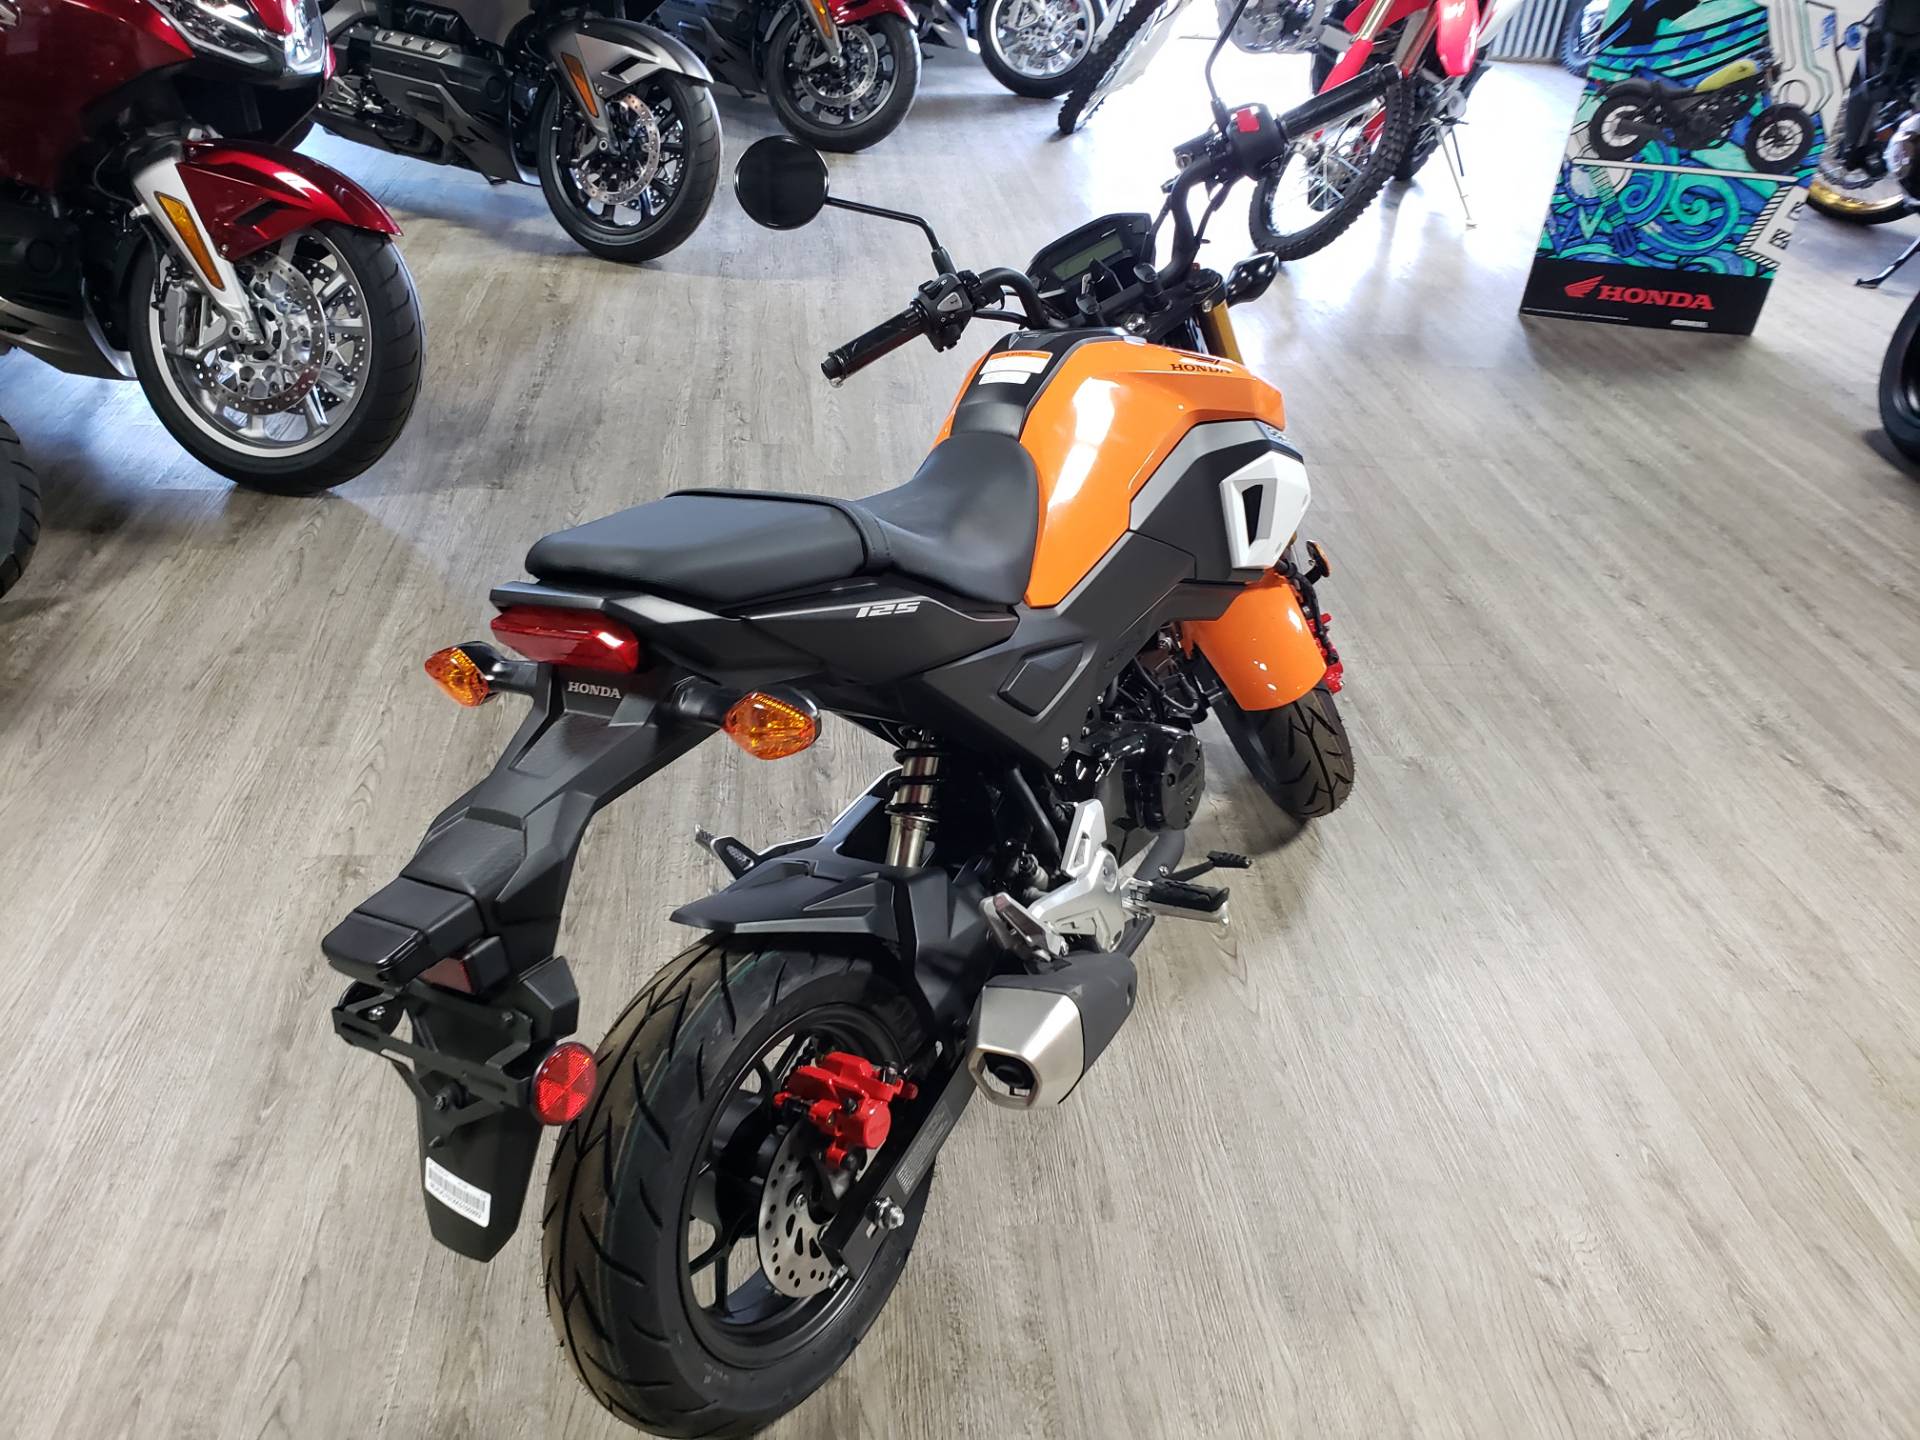 2019 Honda Grom Motorcycles Durant Oklahoma